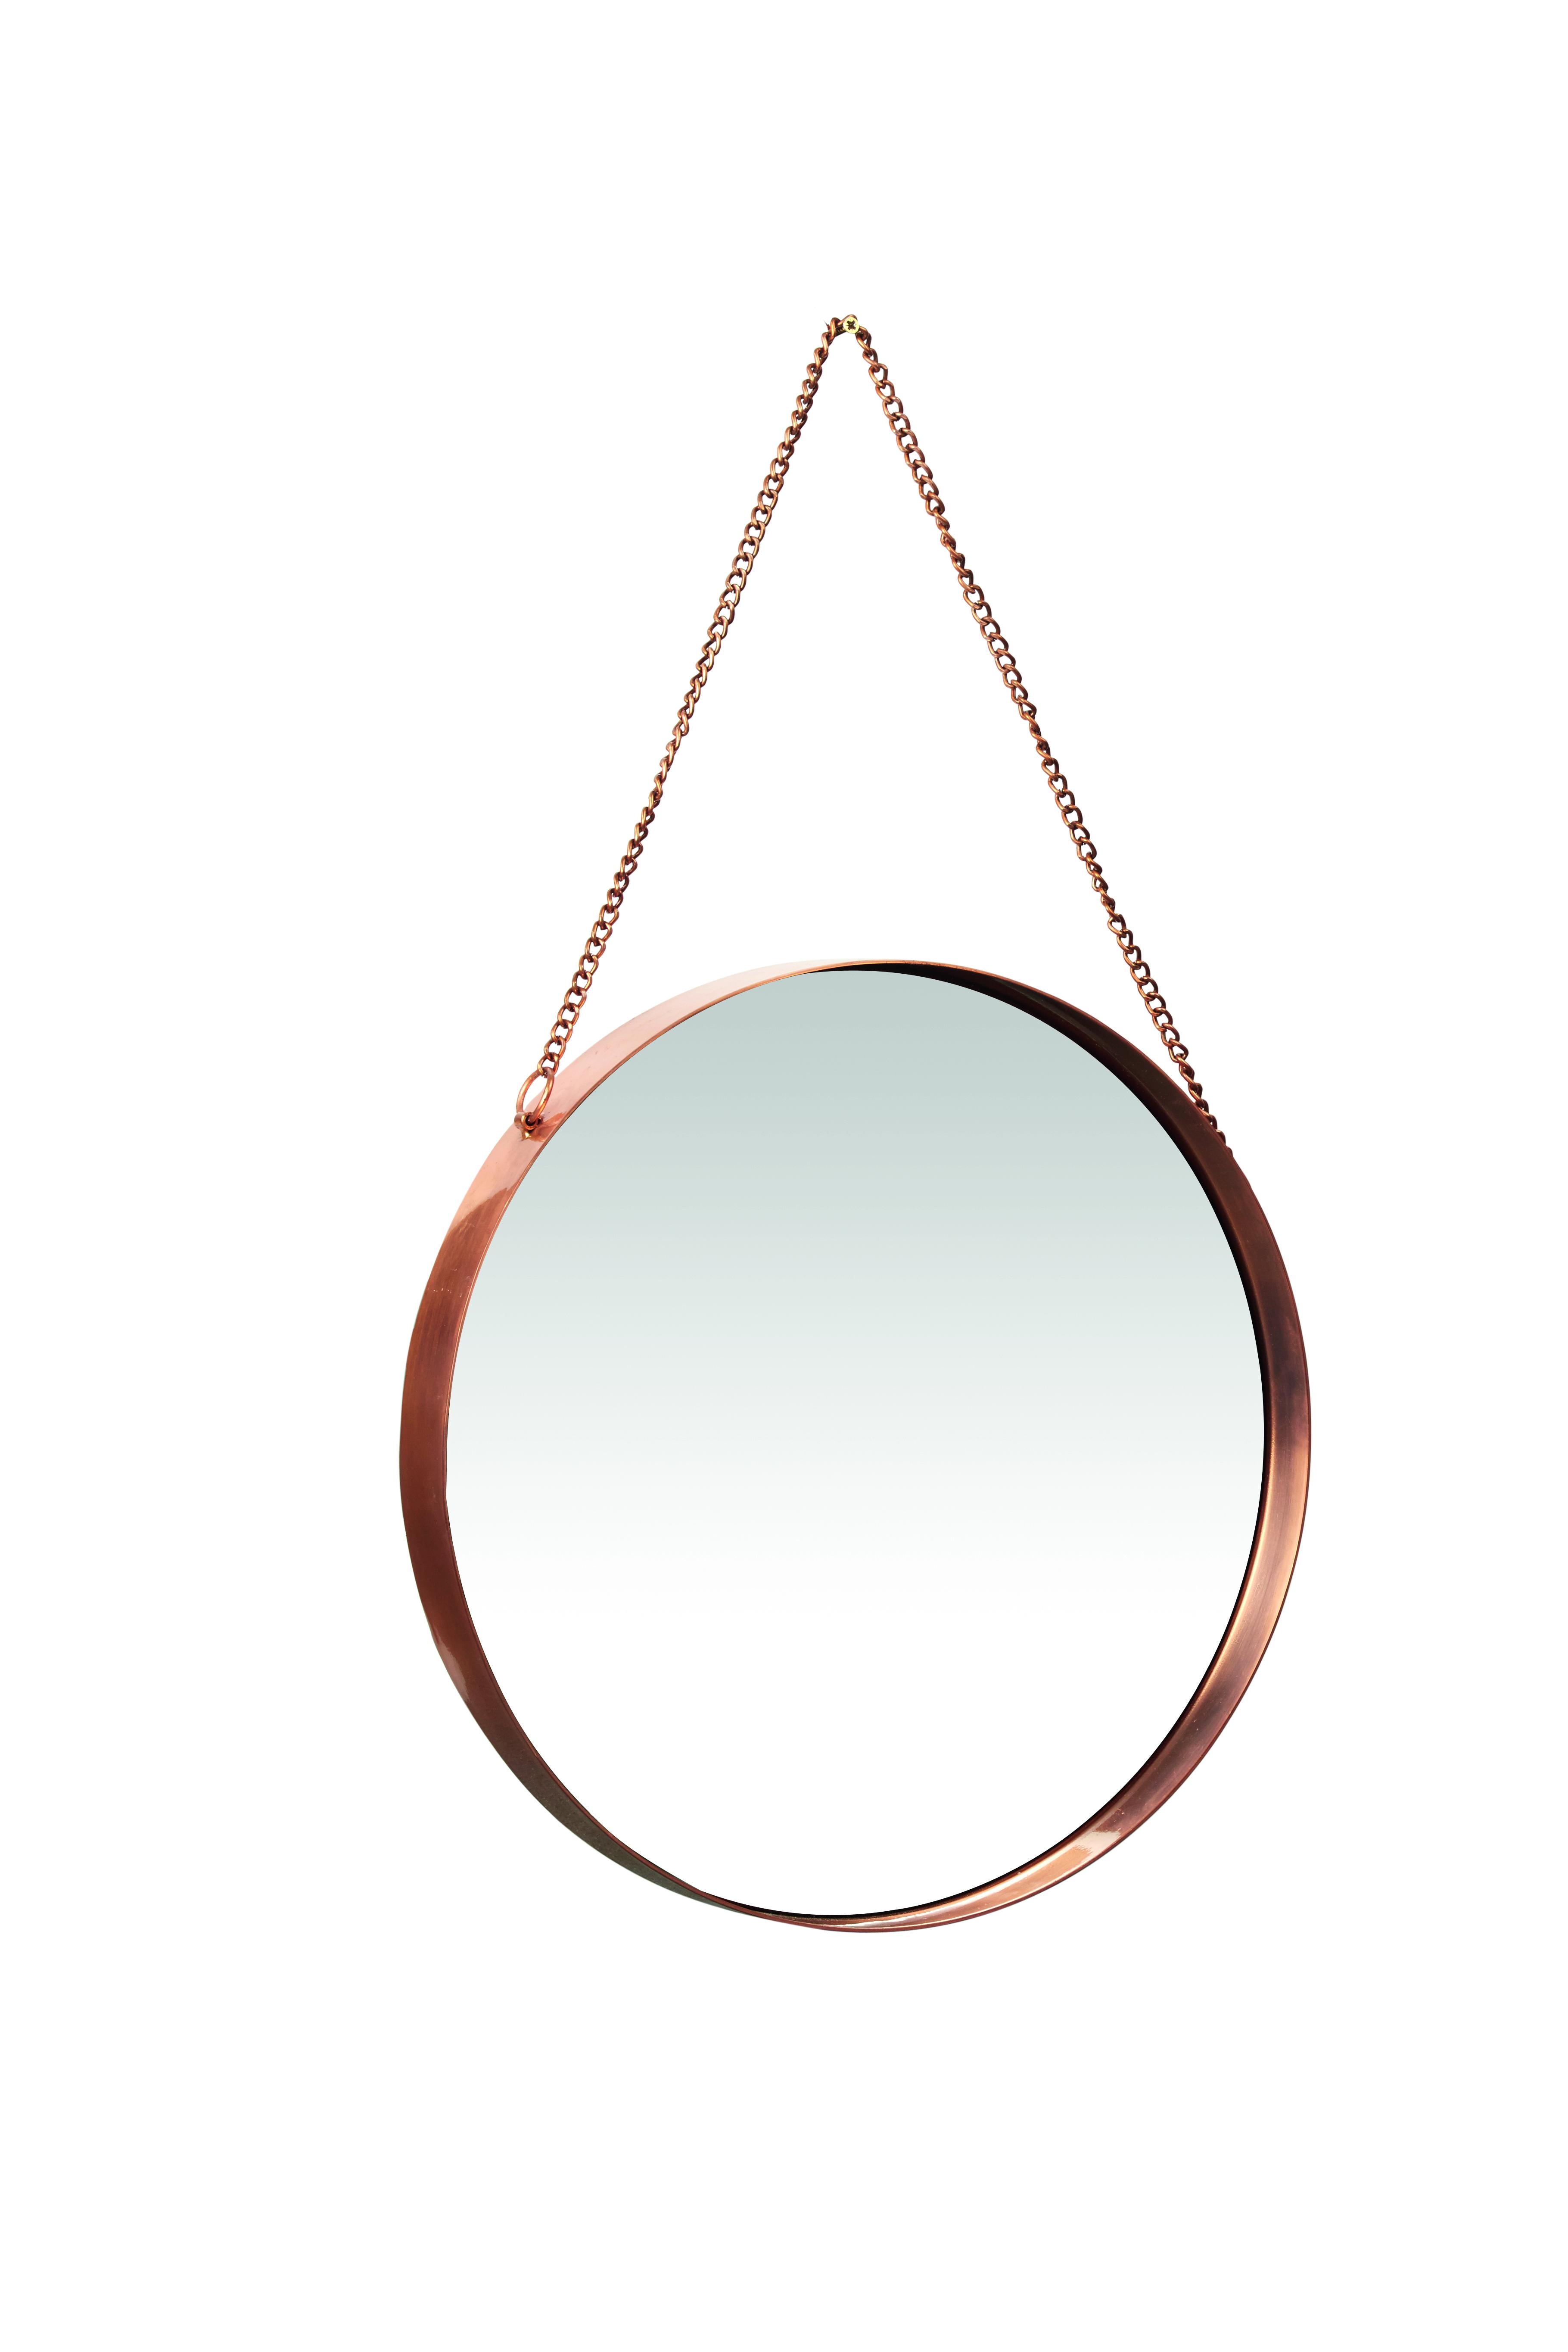 Miroir finitions cuivre - Pomax - 111 €